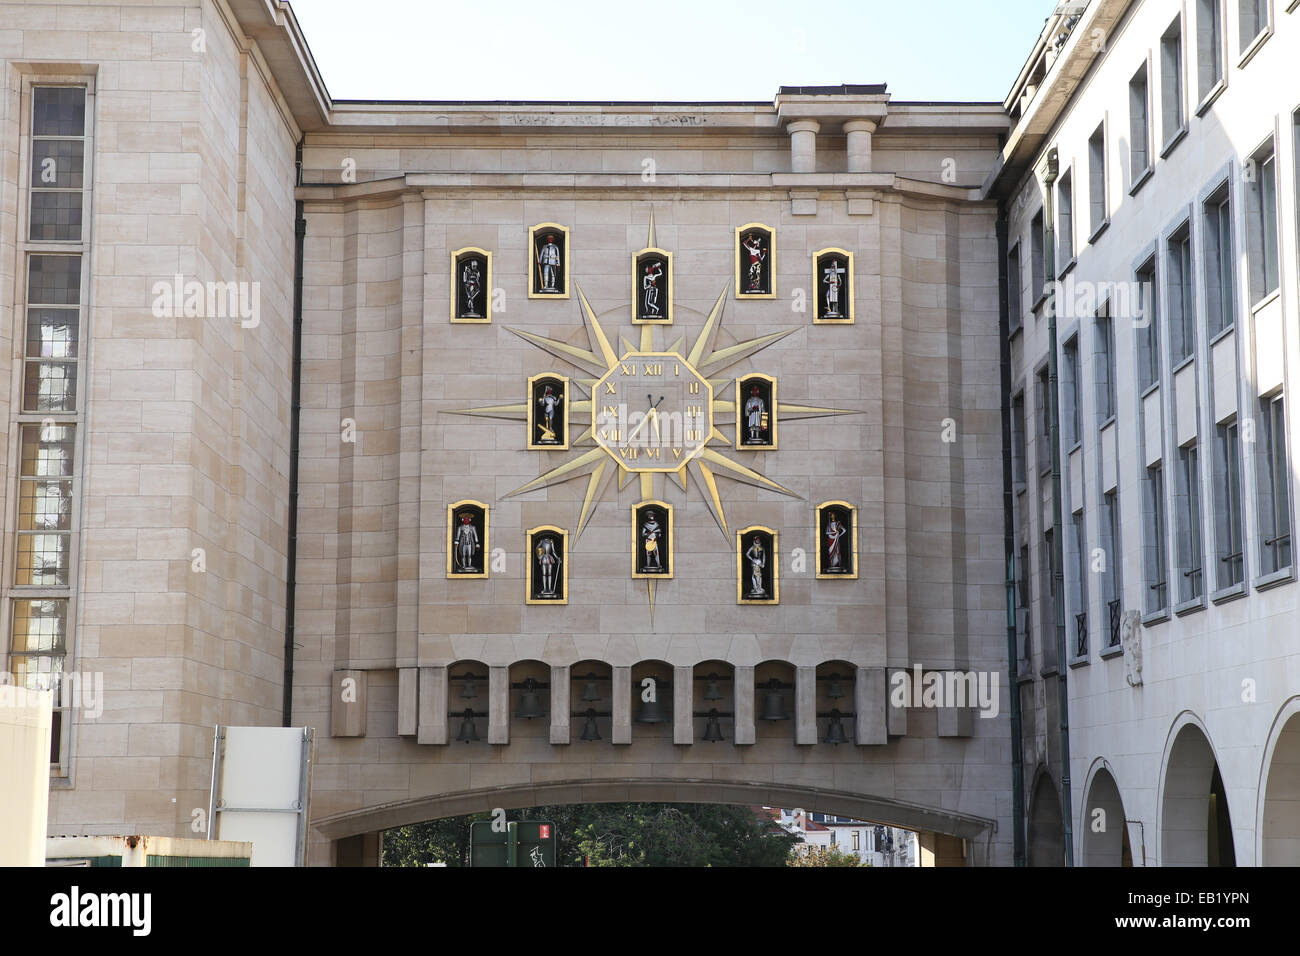 Outdoor orologio analogico della parete edilizia Bruxelles Belgio europa Foto Stock